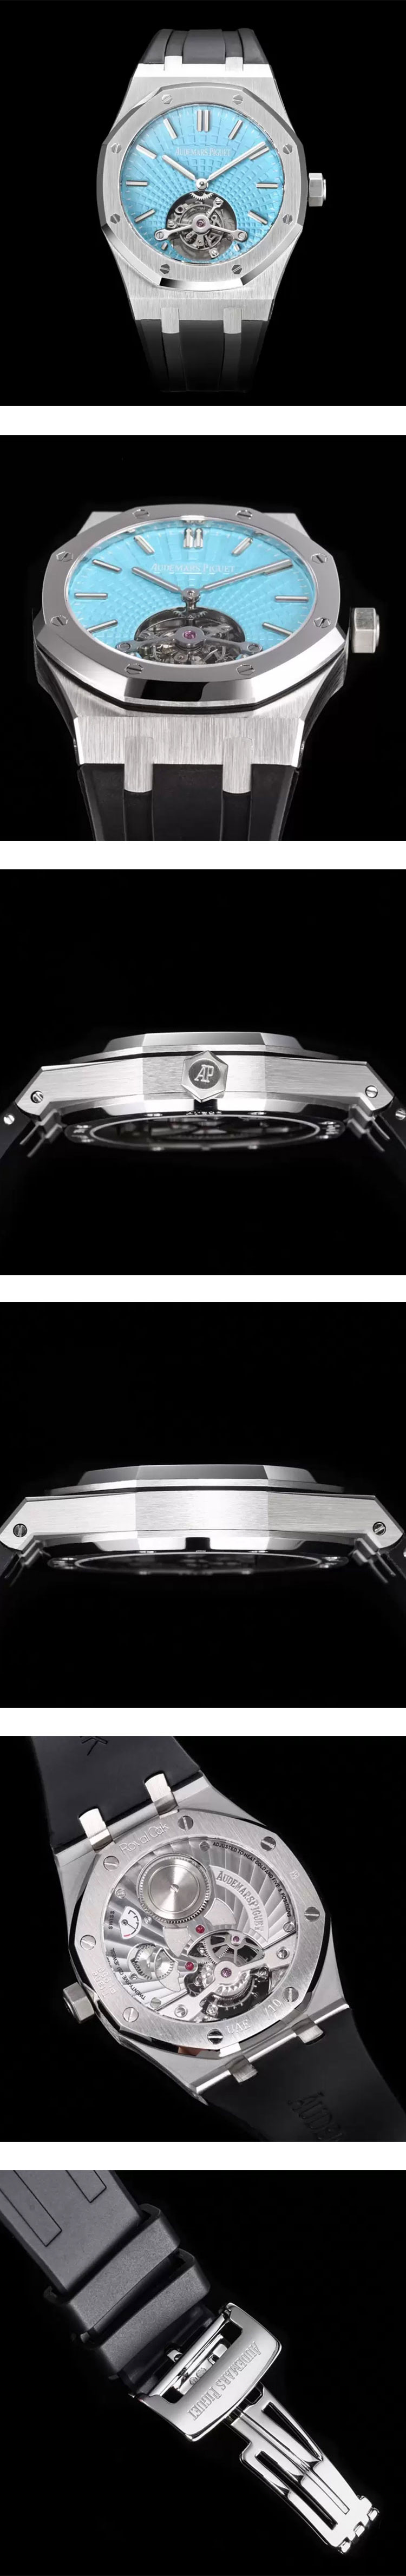 オーデマピゲ時計スーパーコピー ロイヤルオーク フライング 26530PT.OO.1220PT.01 トゥールビヨン 41mm